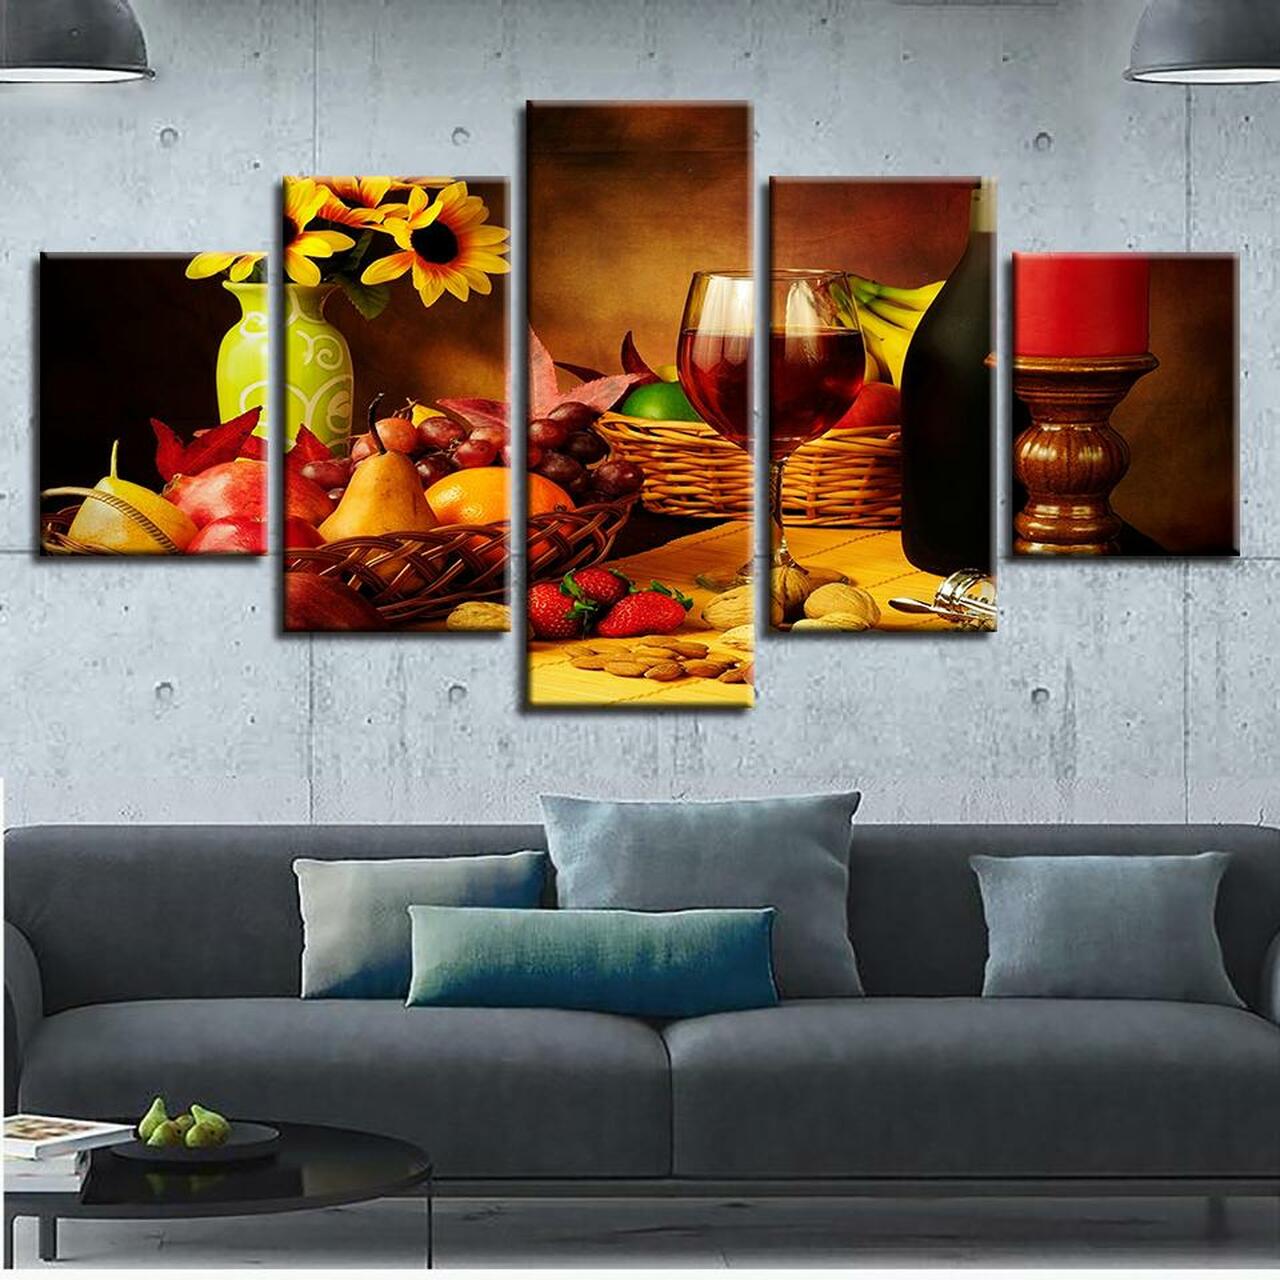 walnuts and fruits 5 pices peinture sur toile impression sur toile toile art pour la dcoration intrieurekj4j3